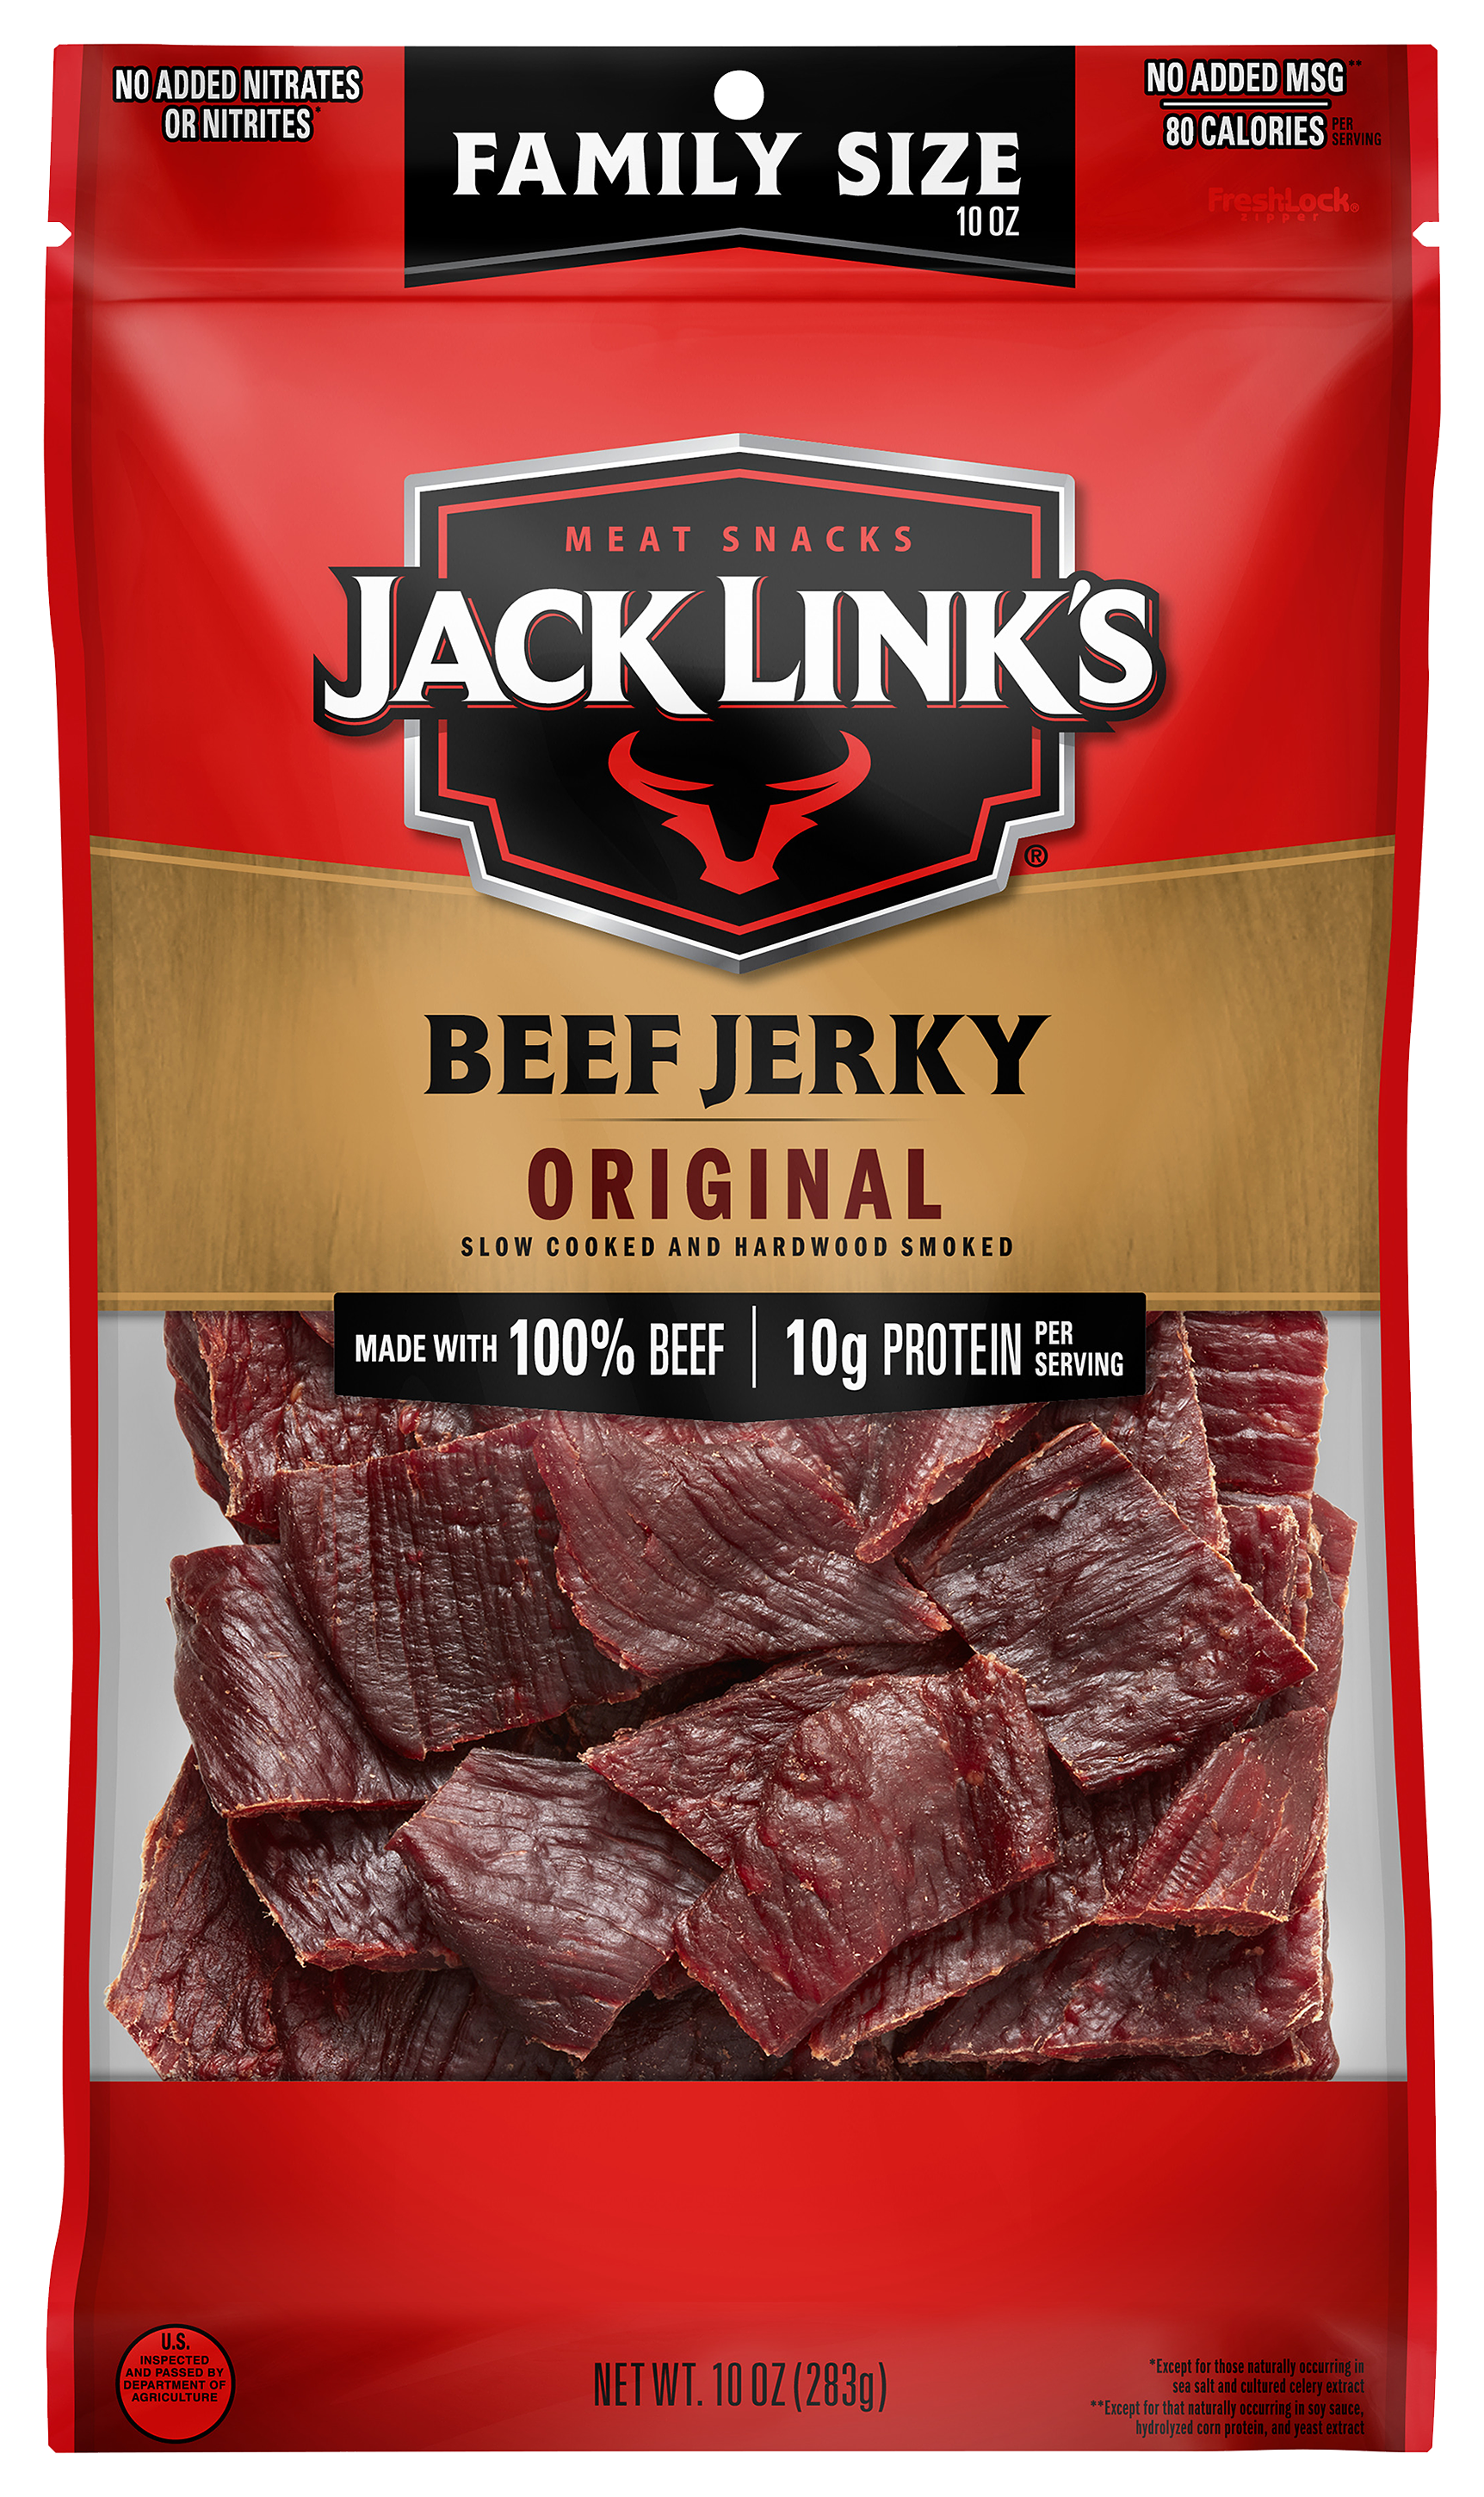 Jack Link's Original Beef Jerky - 10 oz